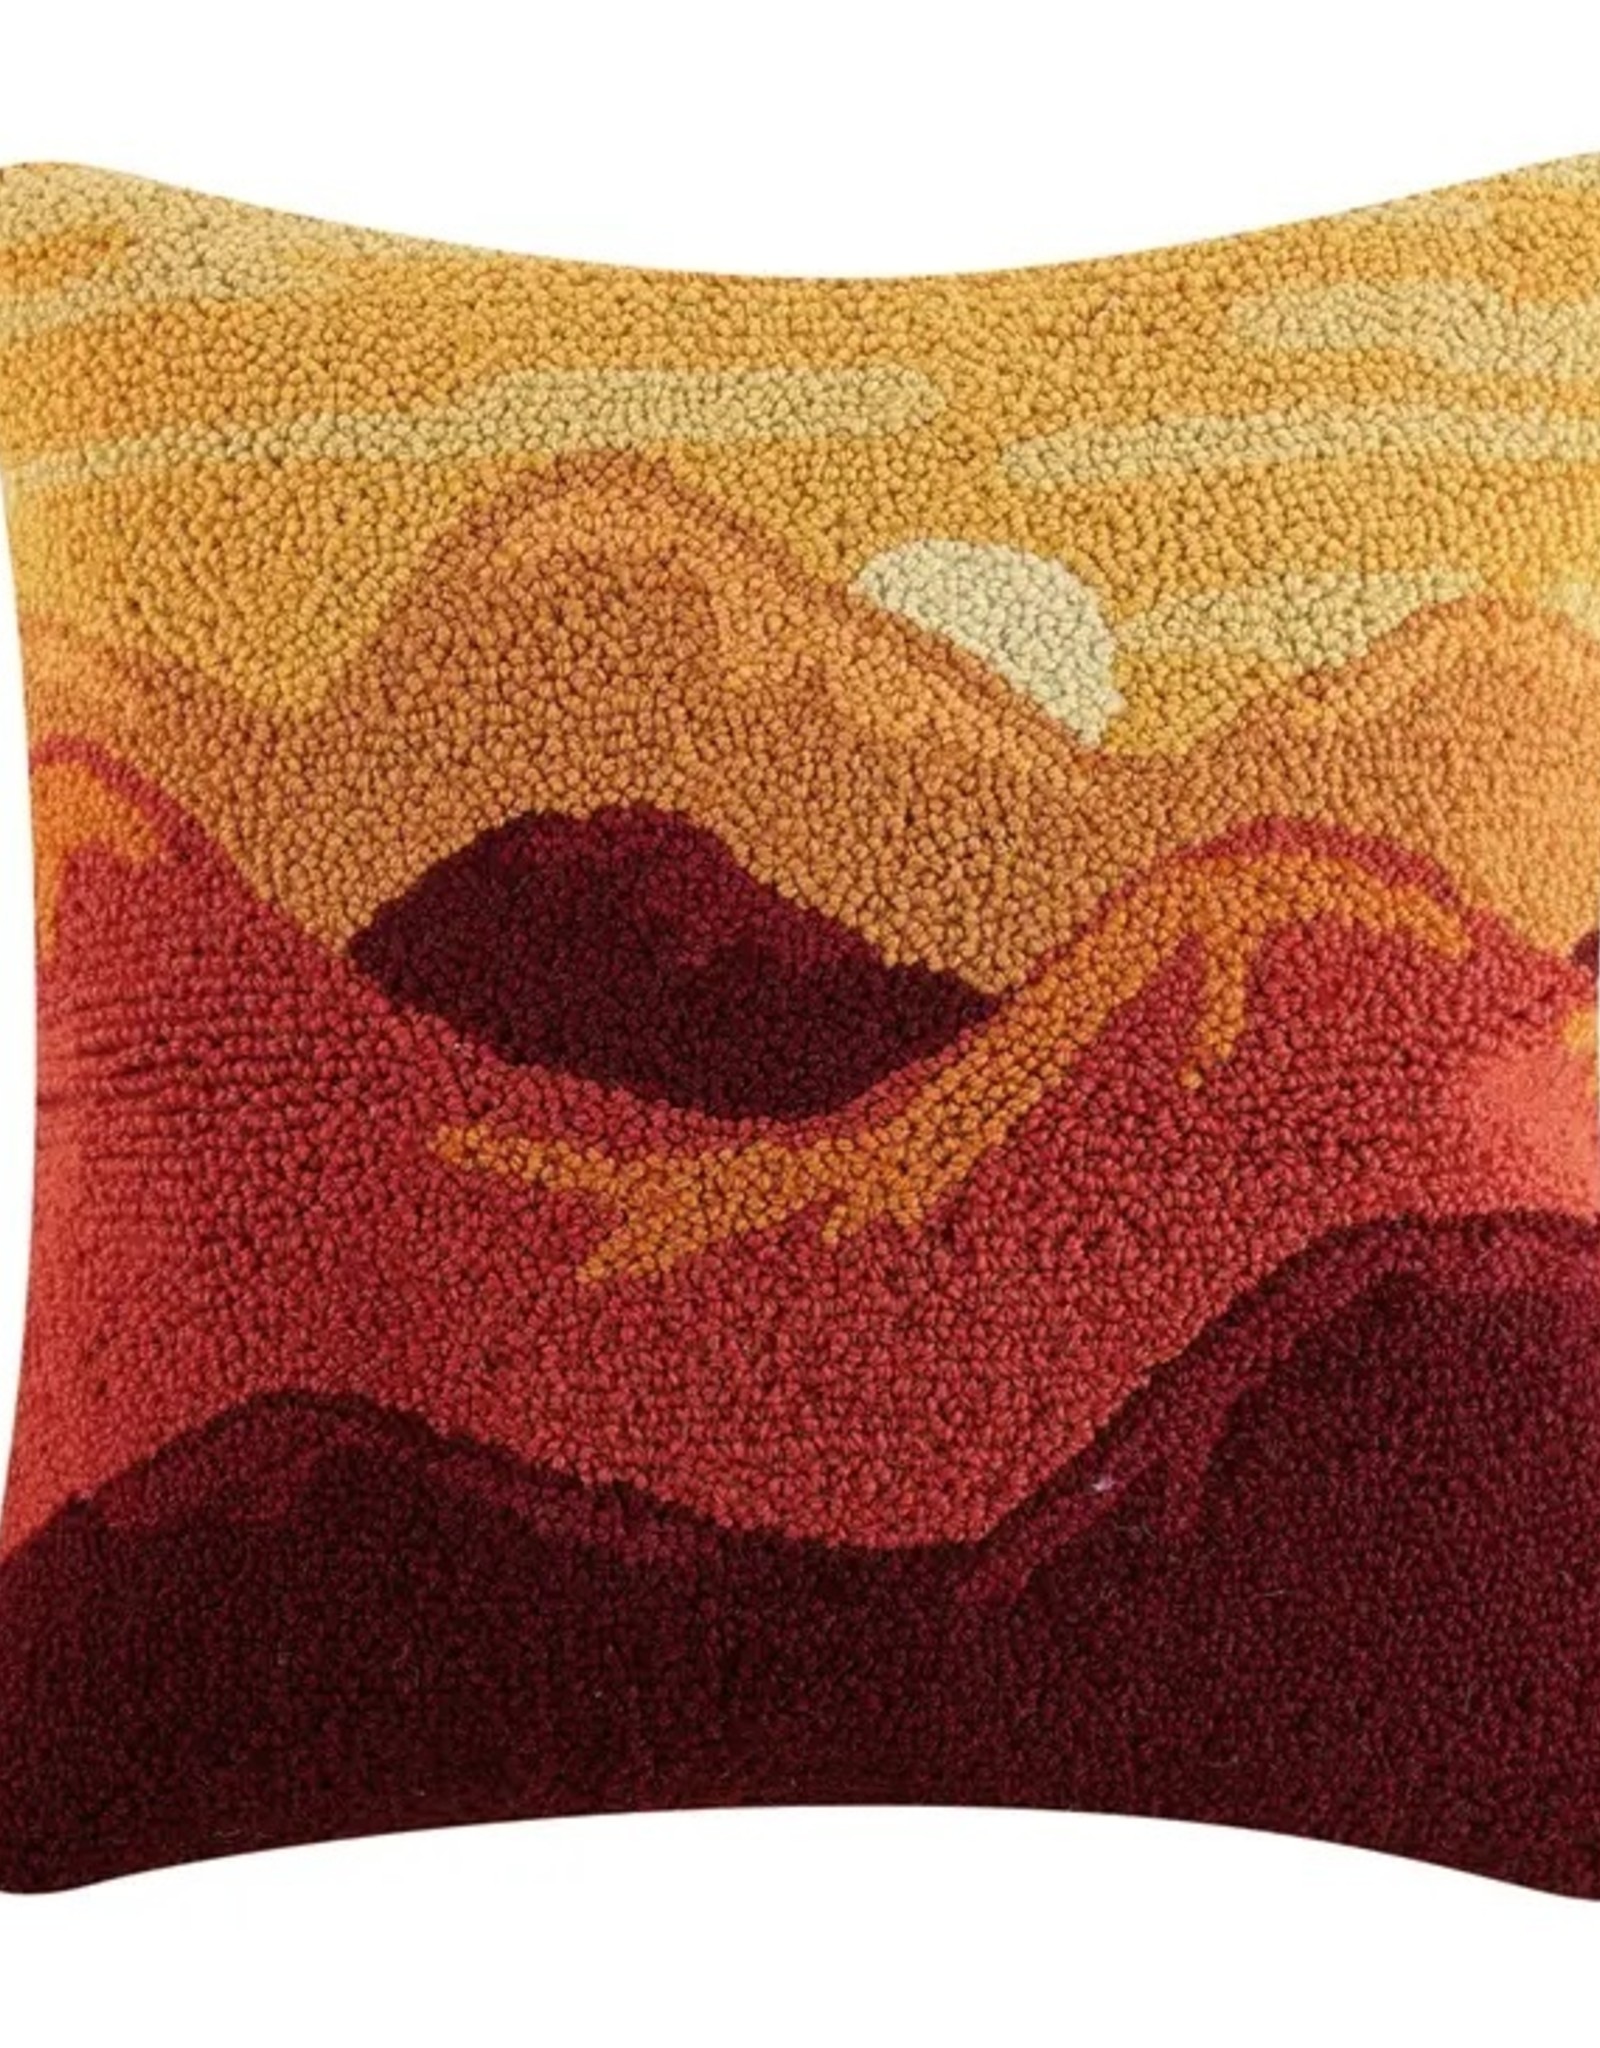 Peking Handicraft Sunset Hook Pillow 18"